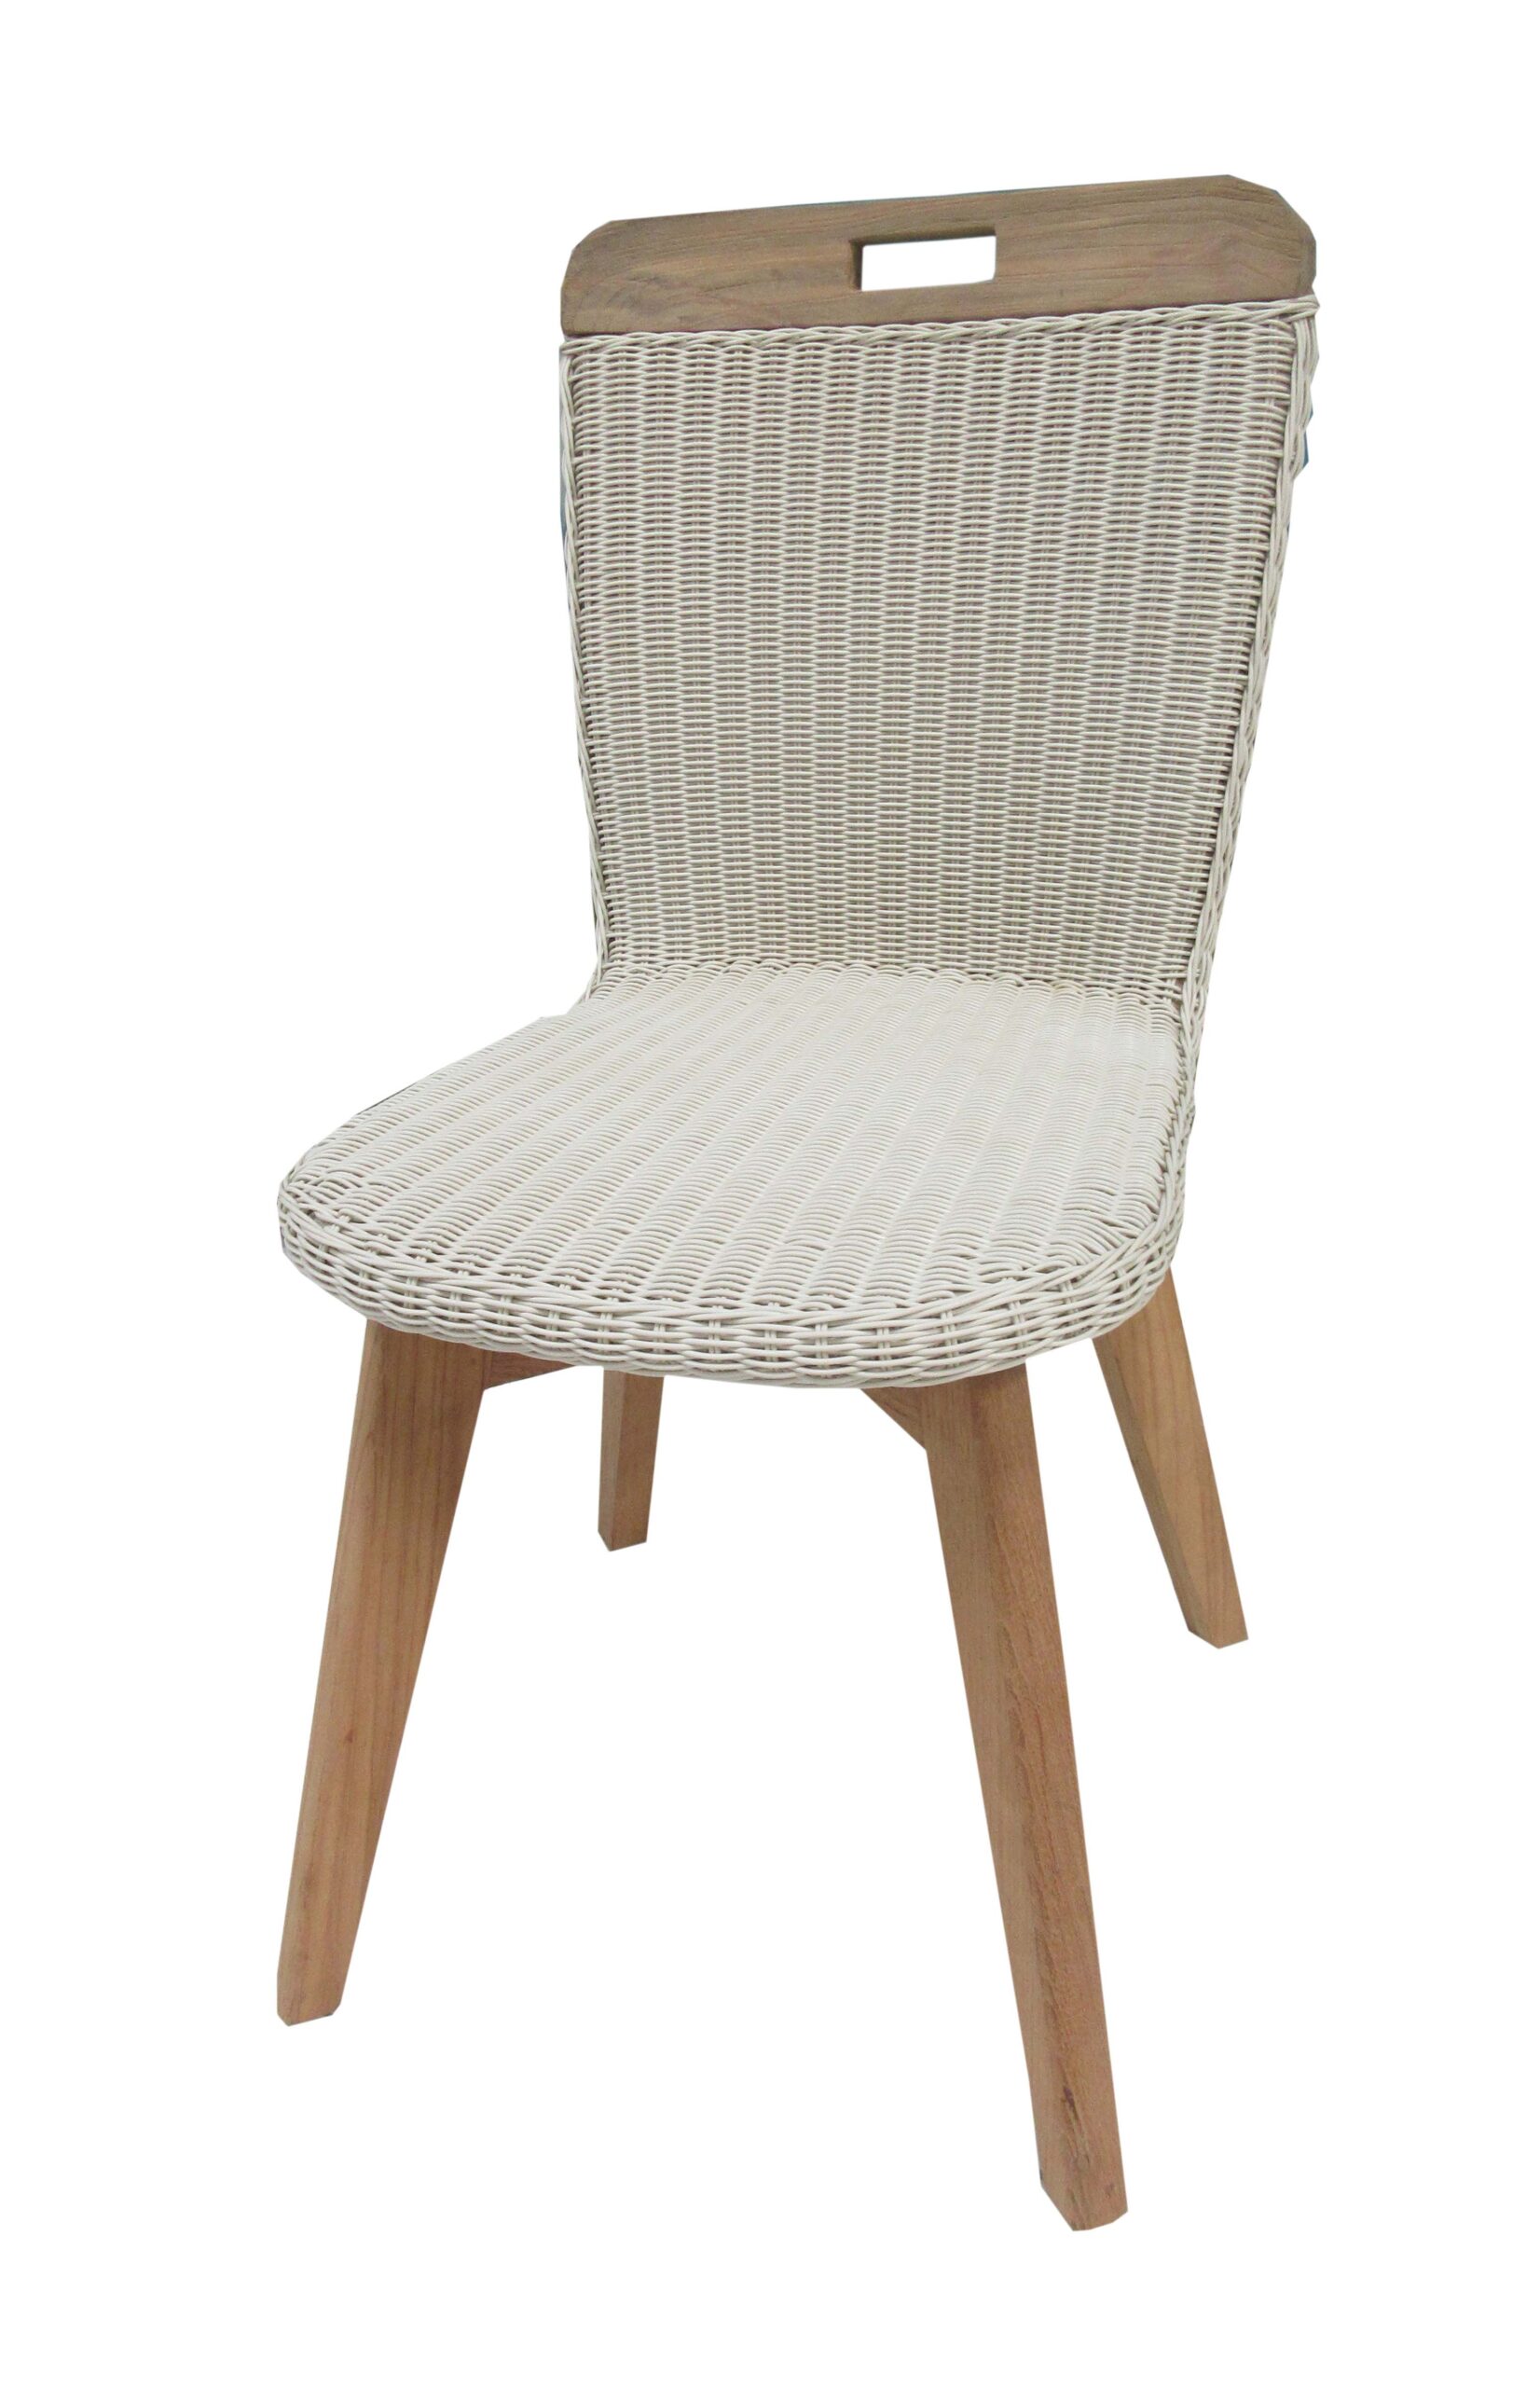 Burkino Dining Chair
48x60x91 cm